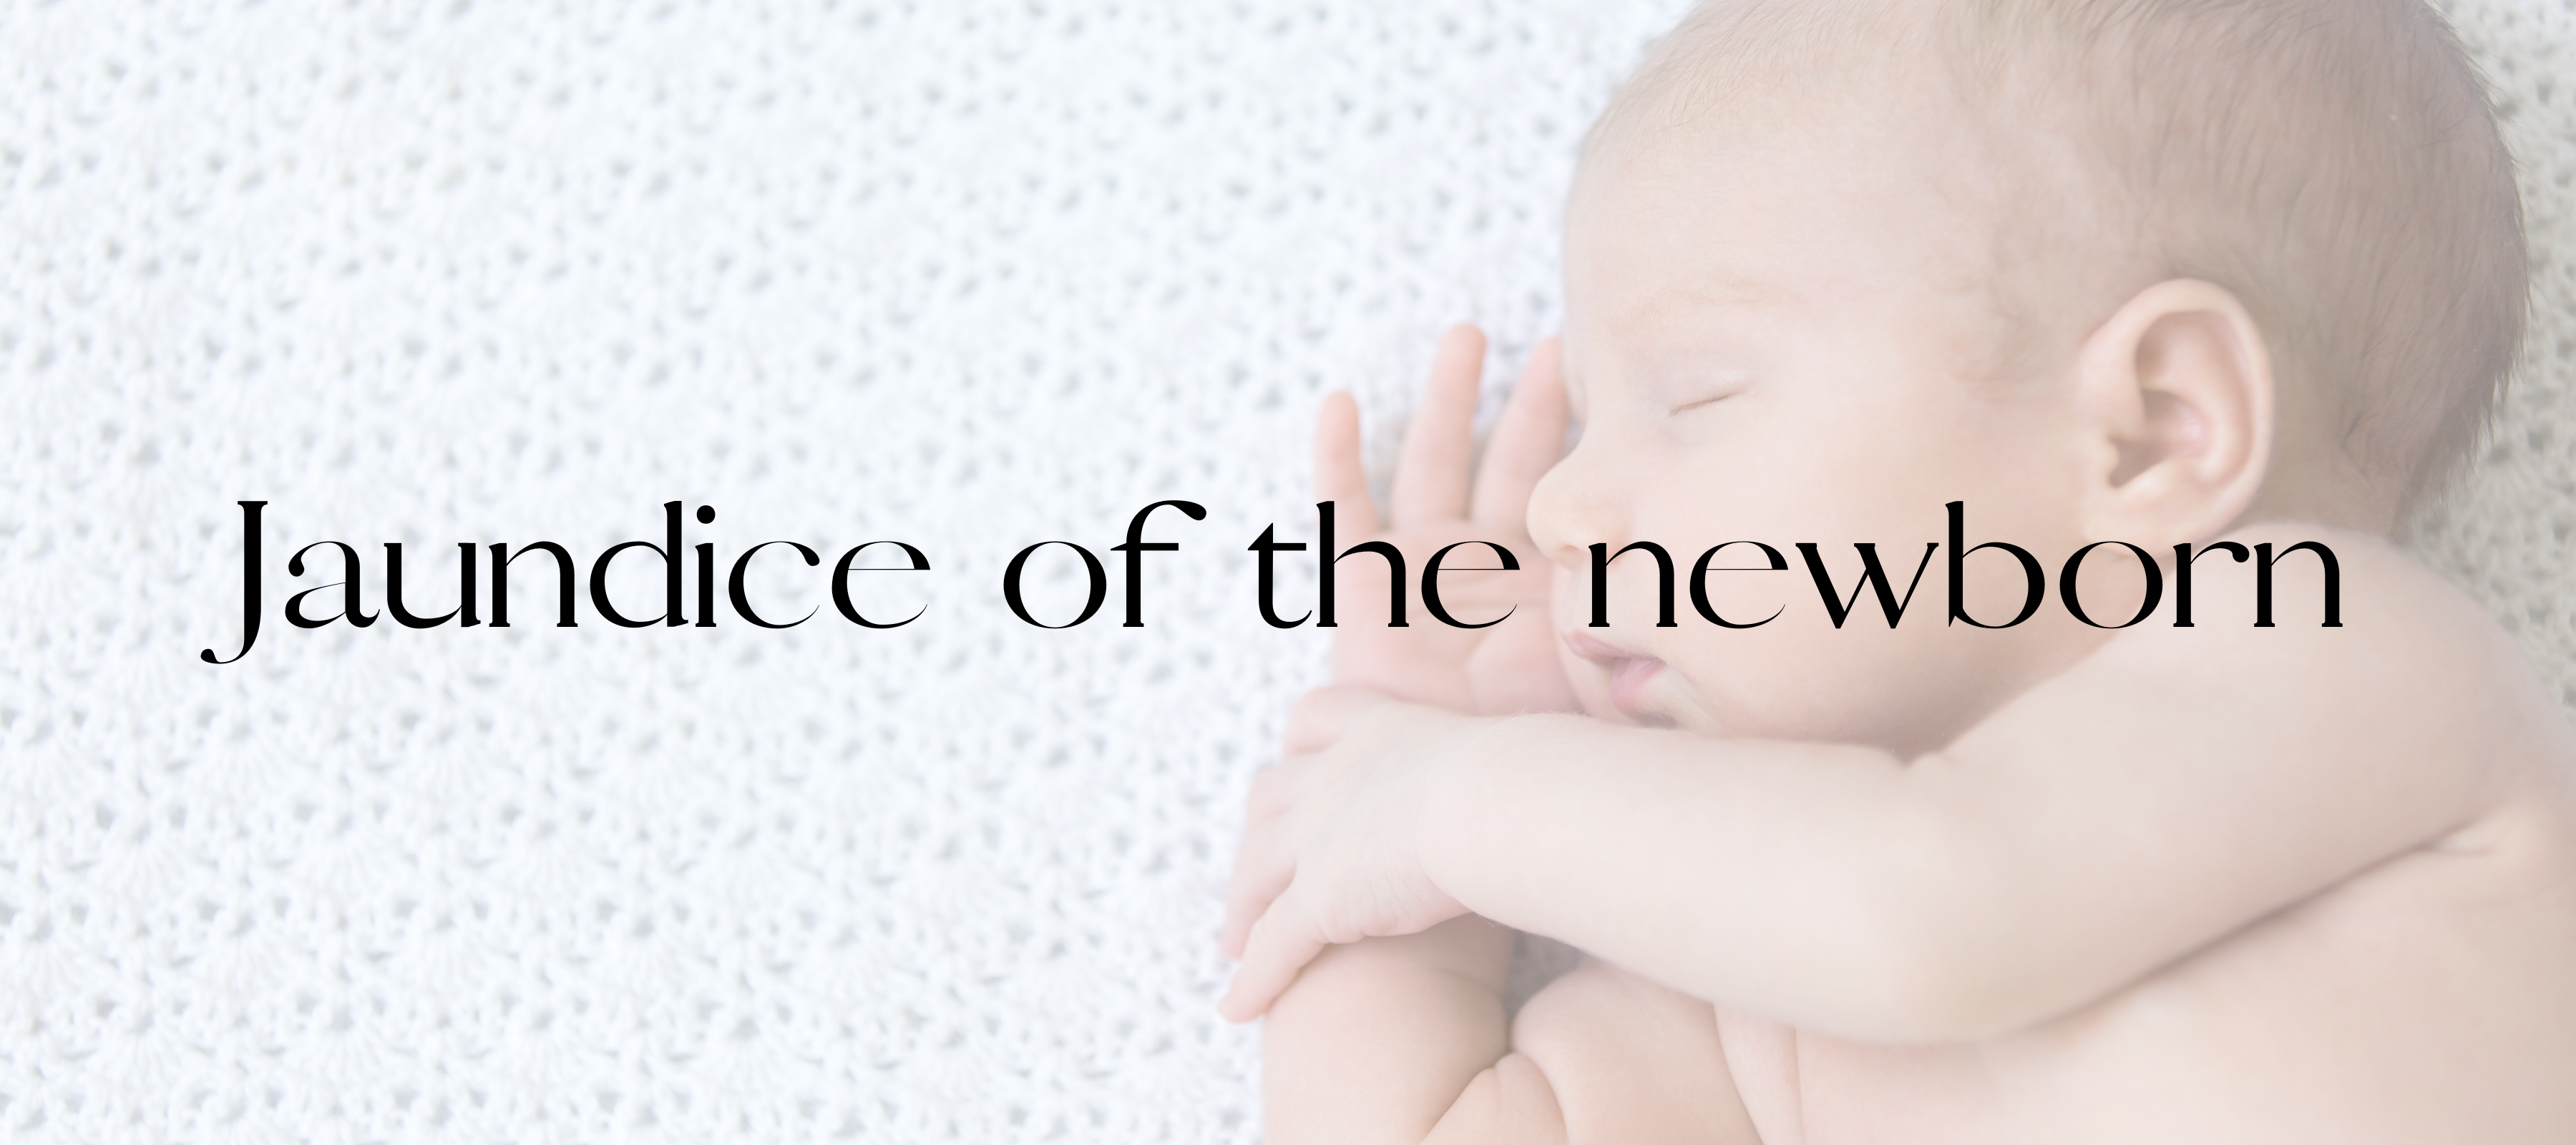 Jaundice of the newborn